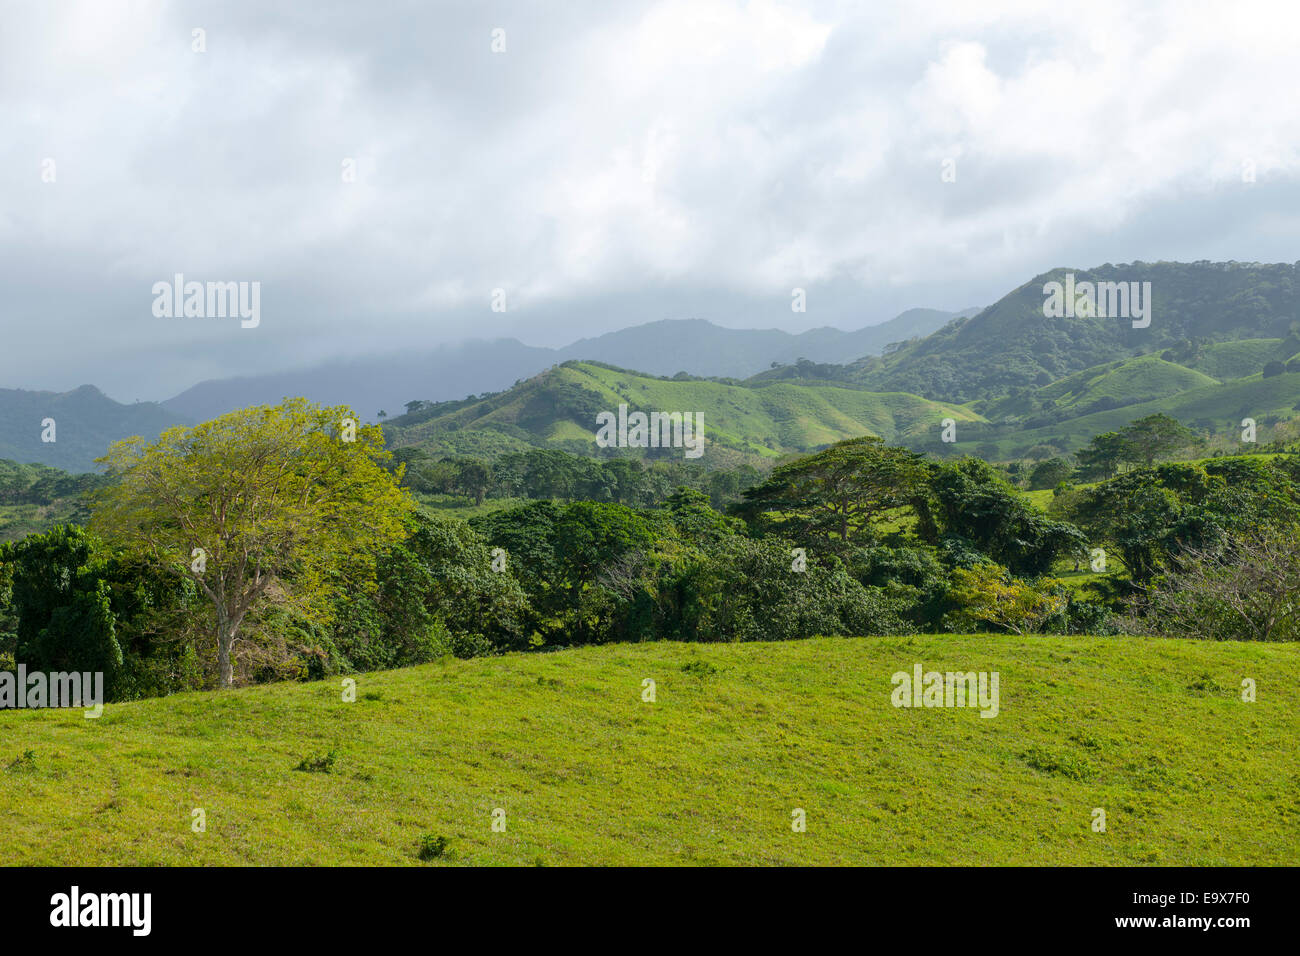 Dominikanische Republik, Osten, Landschaft be El Cedro Stock Photo